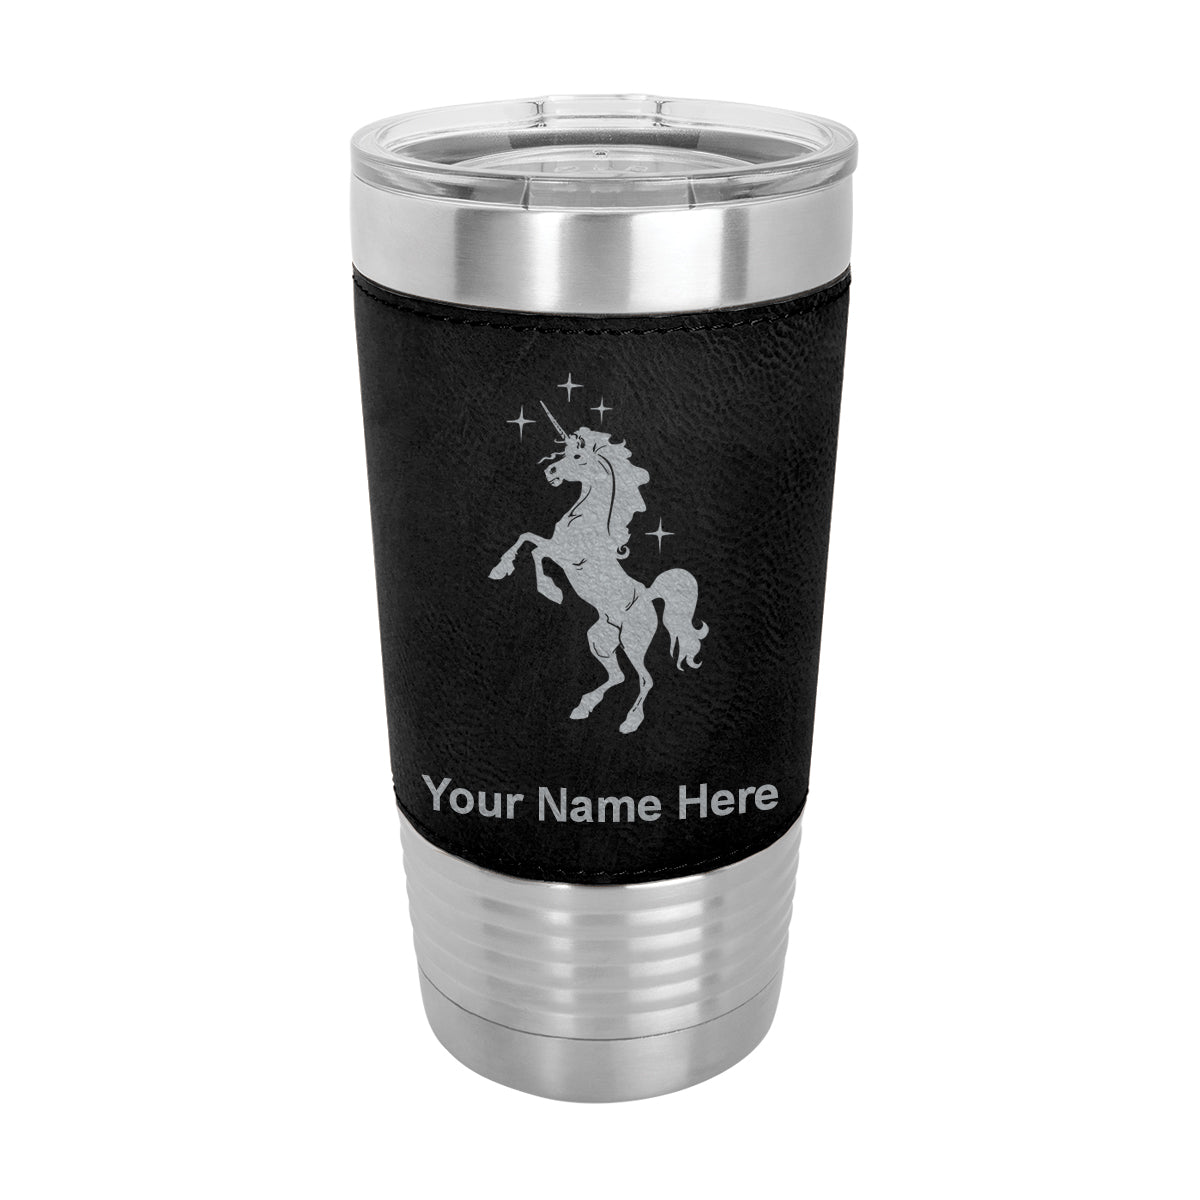 20oz Faux Leather Tumbler Mug, Unicorn, Personalized Engraving Included